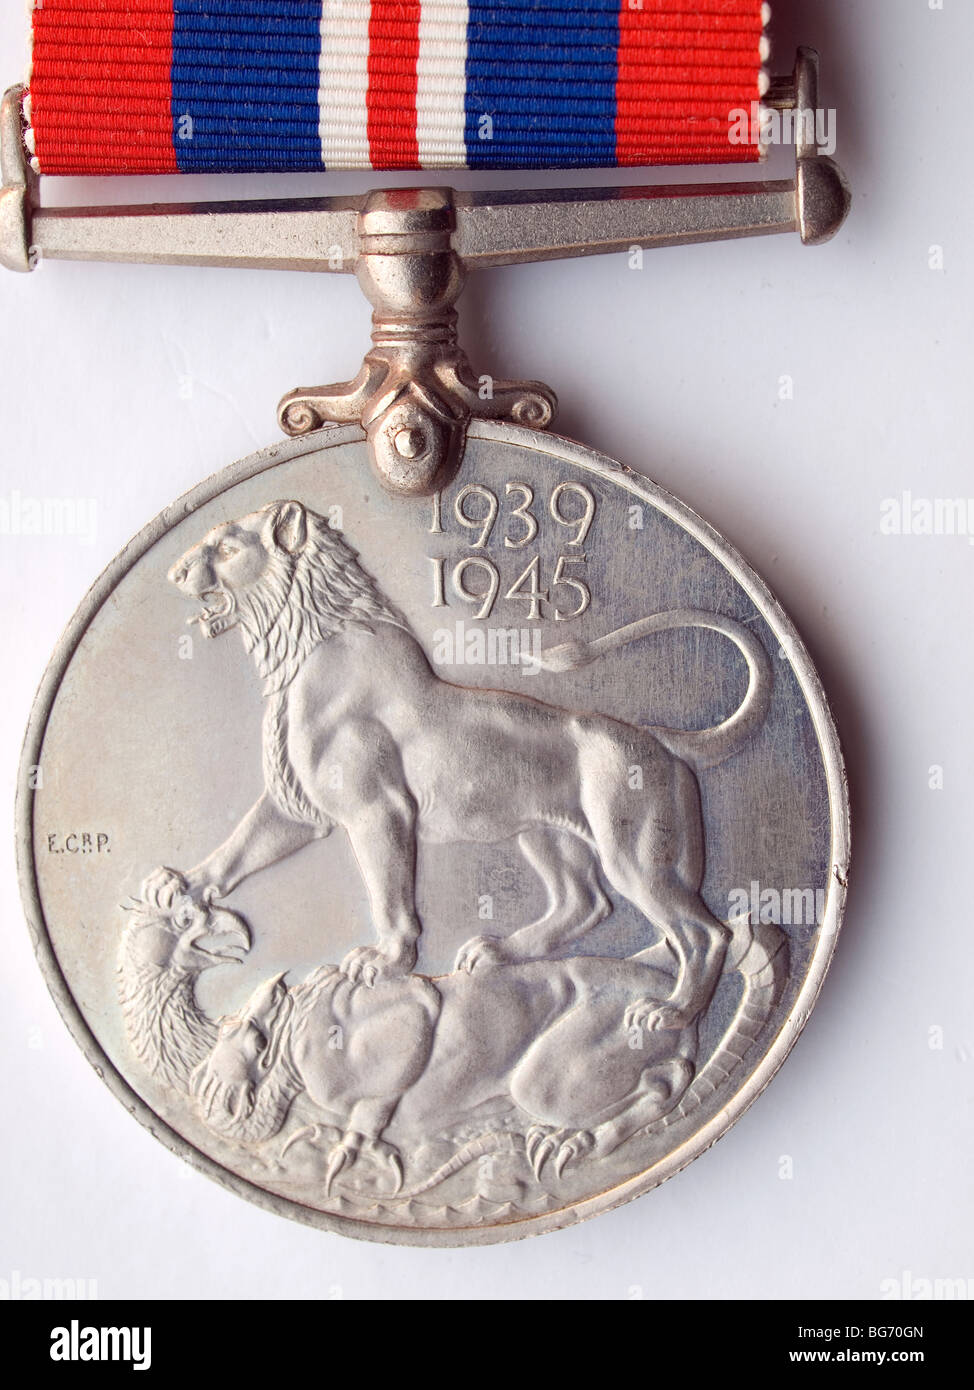 Cerca del reverso de una guerra mundial 2 Medalla a las tropas británicas y del Commonwealth 1939-45 sobre un fondo blanco. Foto de stock